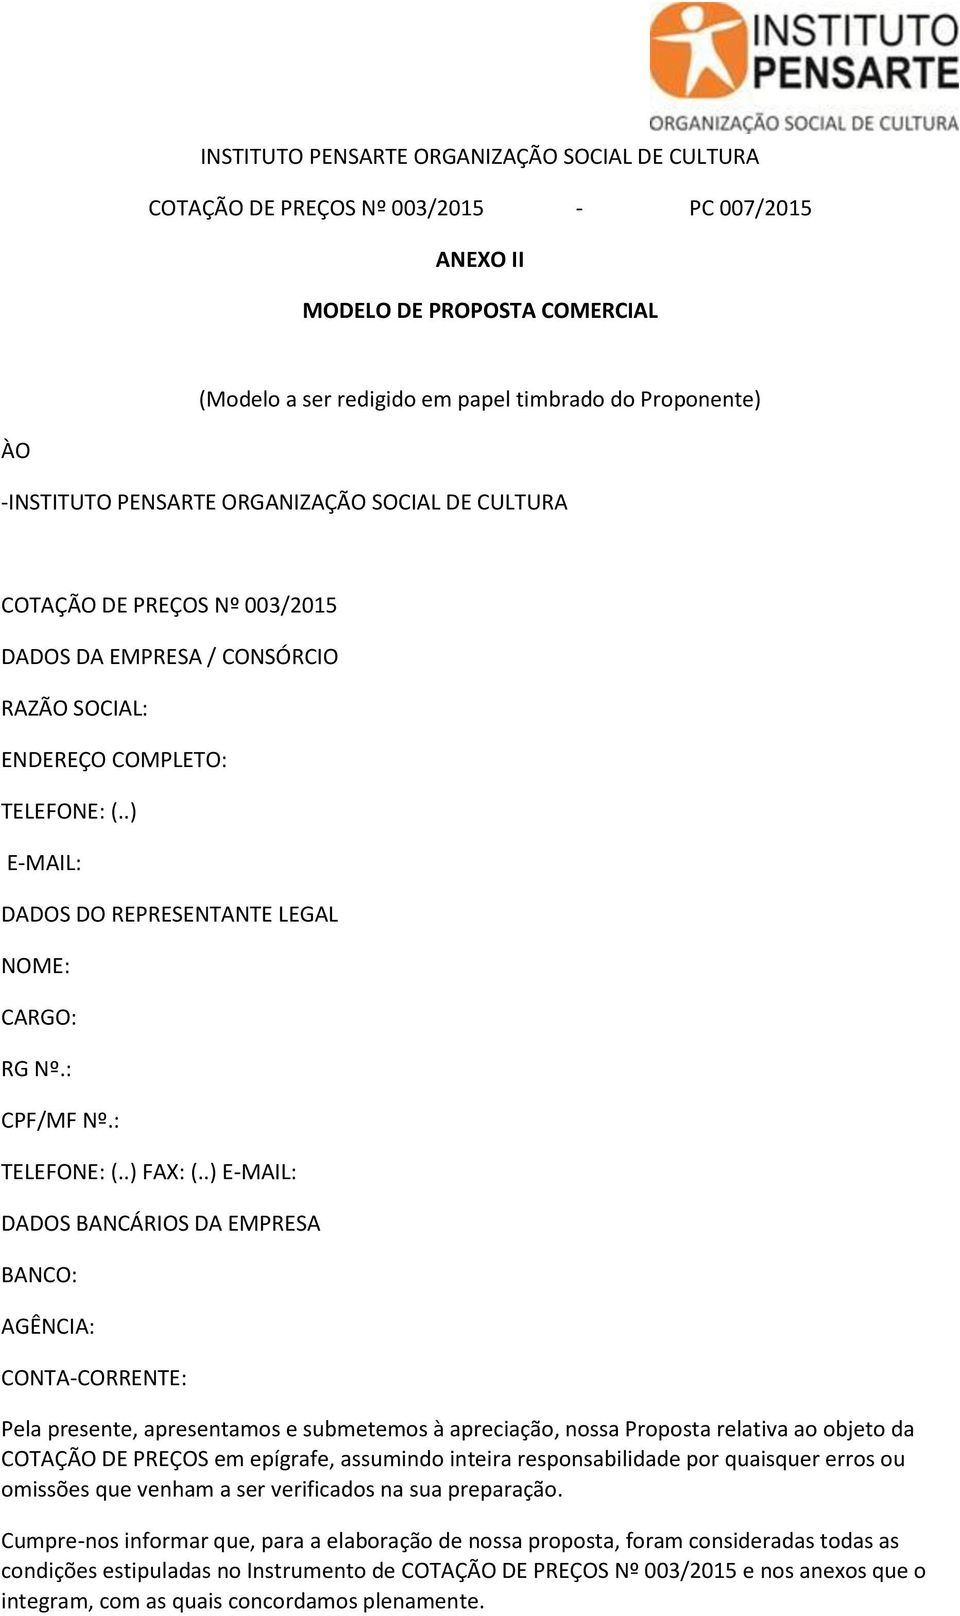 .) E-MAIL: DADOS DO REPRESENTANTE LEGAL NOME: CARGO: RG Nº.: CPF/MF Nº.: TELEFONE: (..) FAX: (.